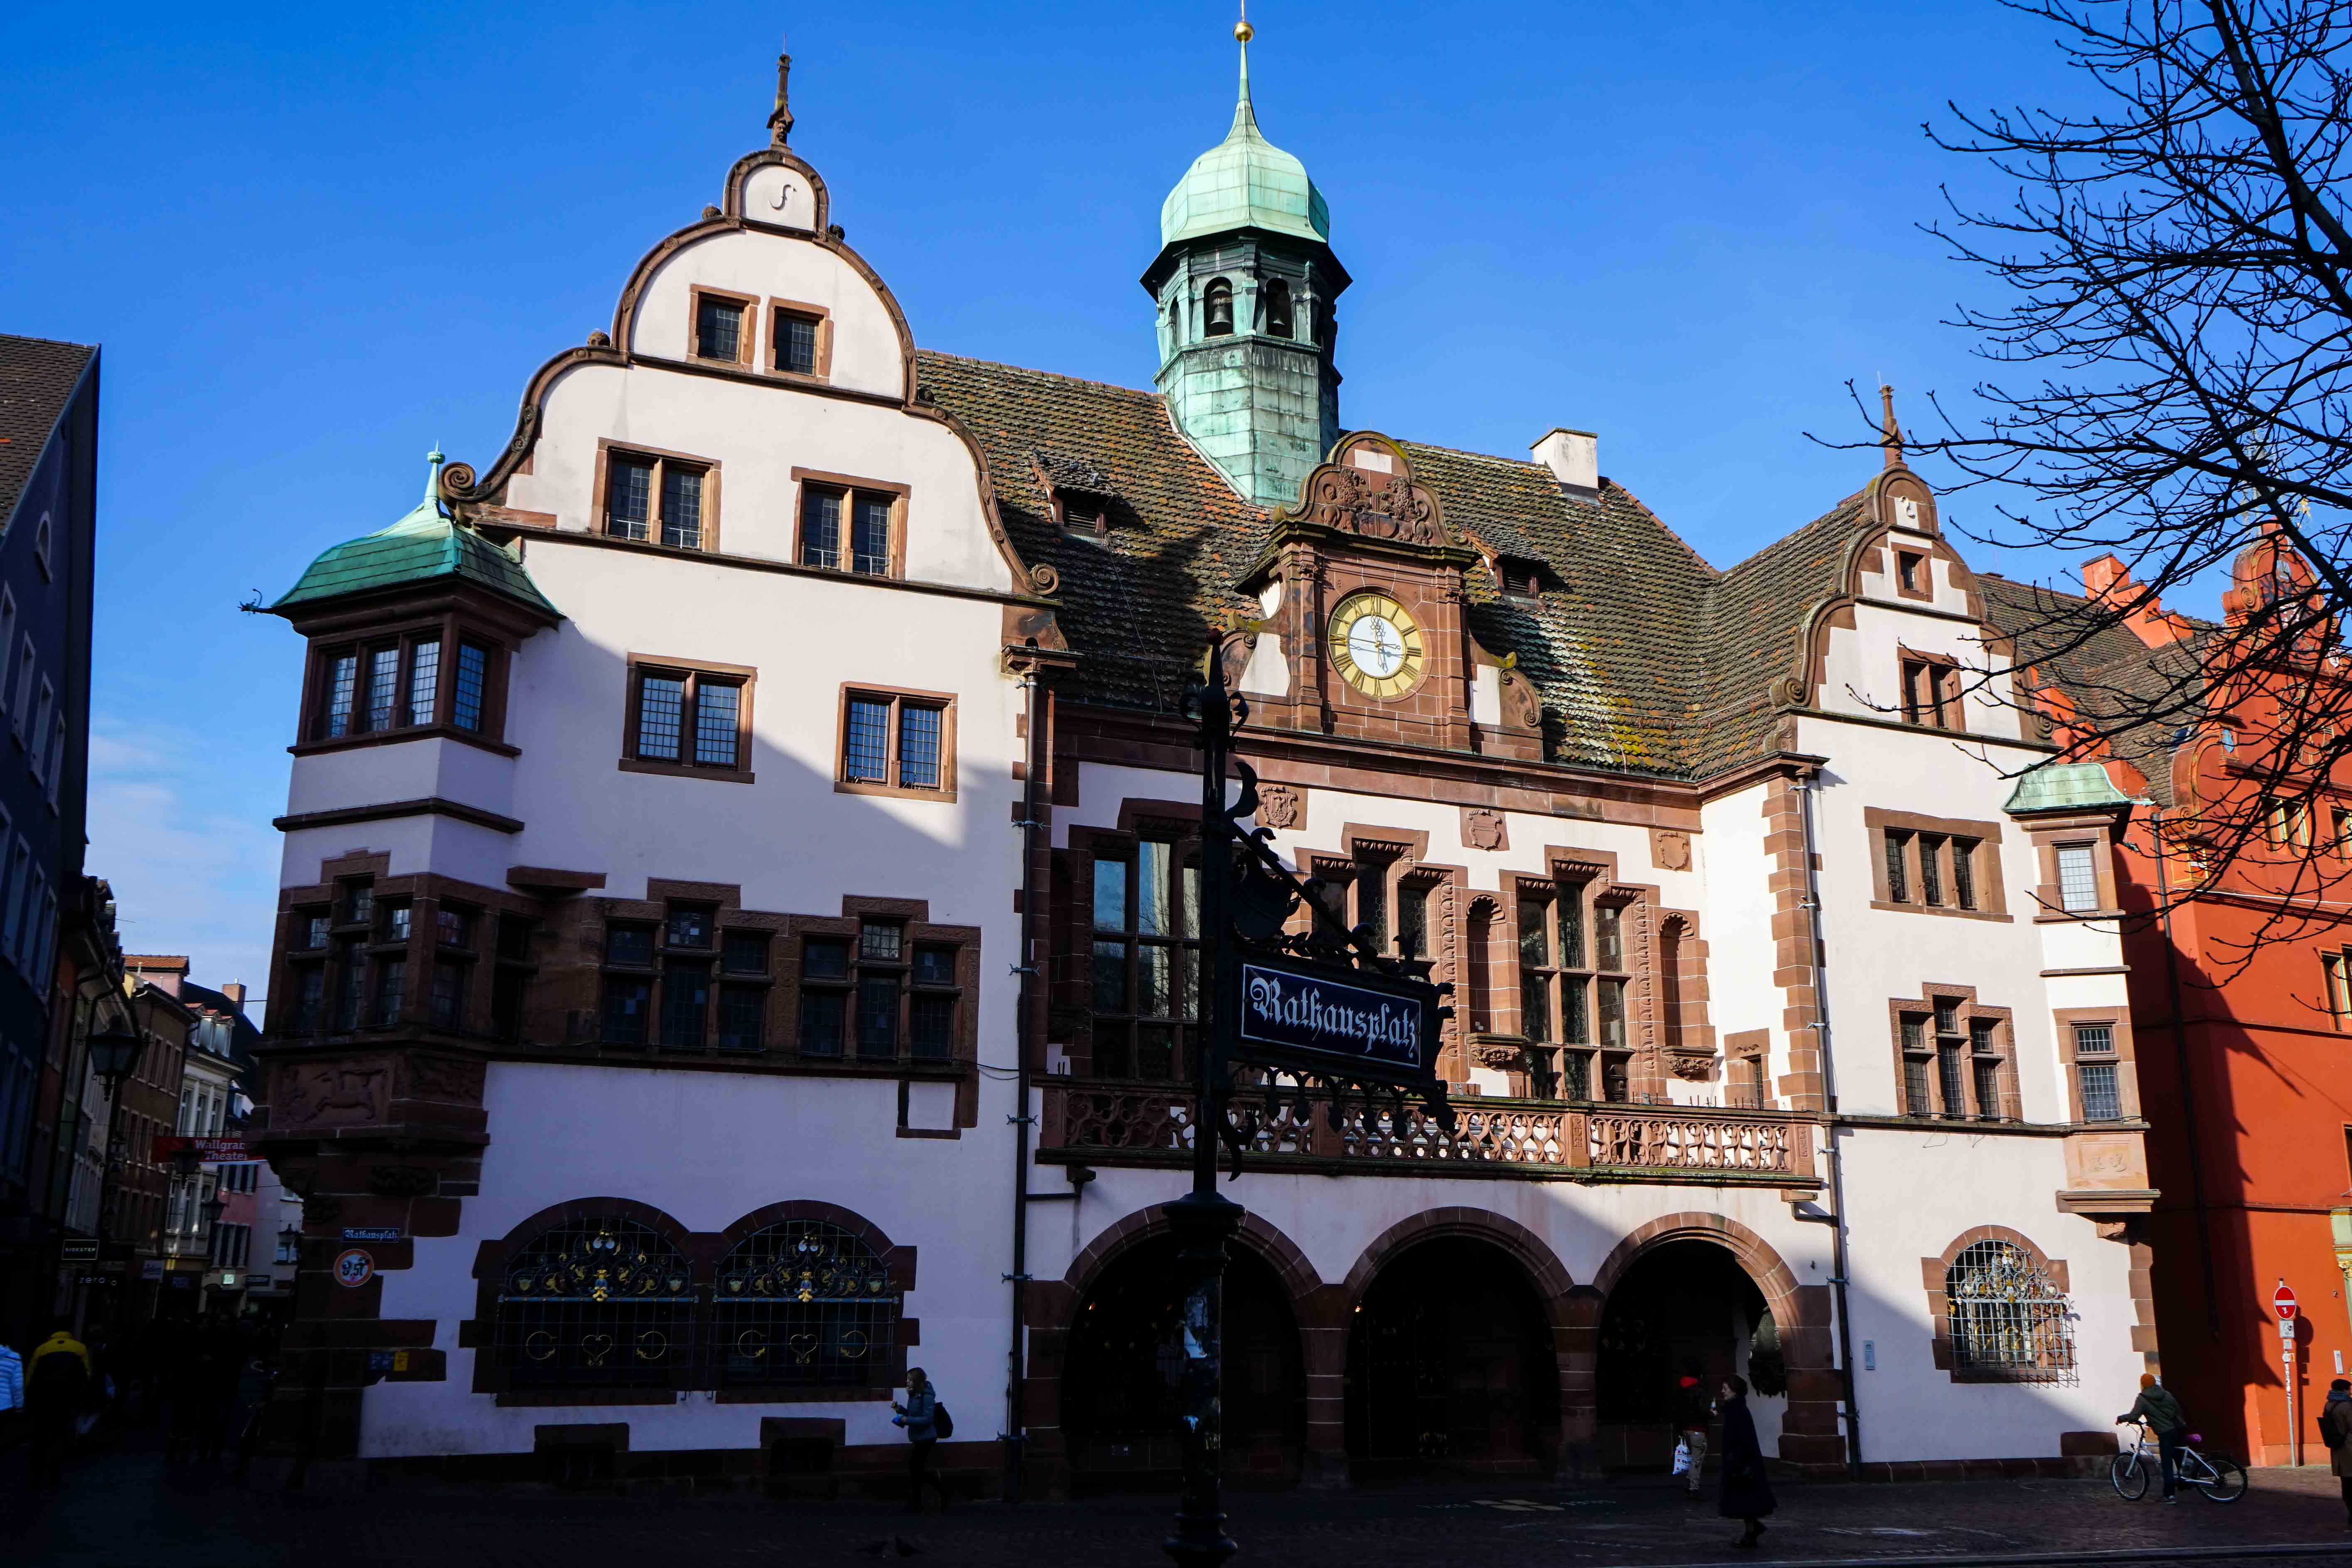 Freiburg Sehenswürdigkeiten Wochenendtrip Freiburg Altstadt neues Rathaus Reiseblog Freiburg Tipps